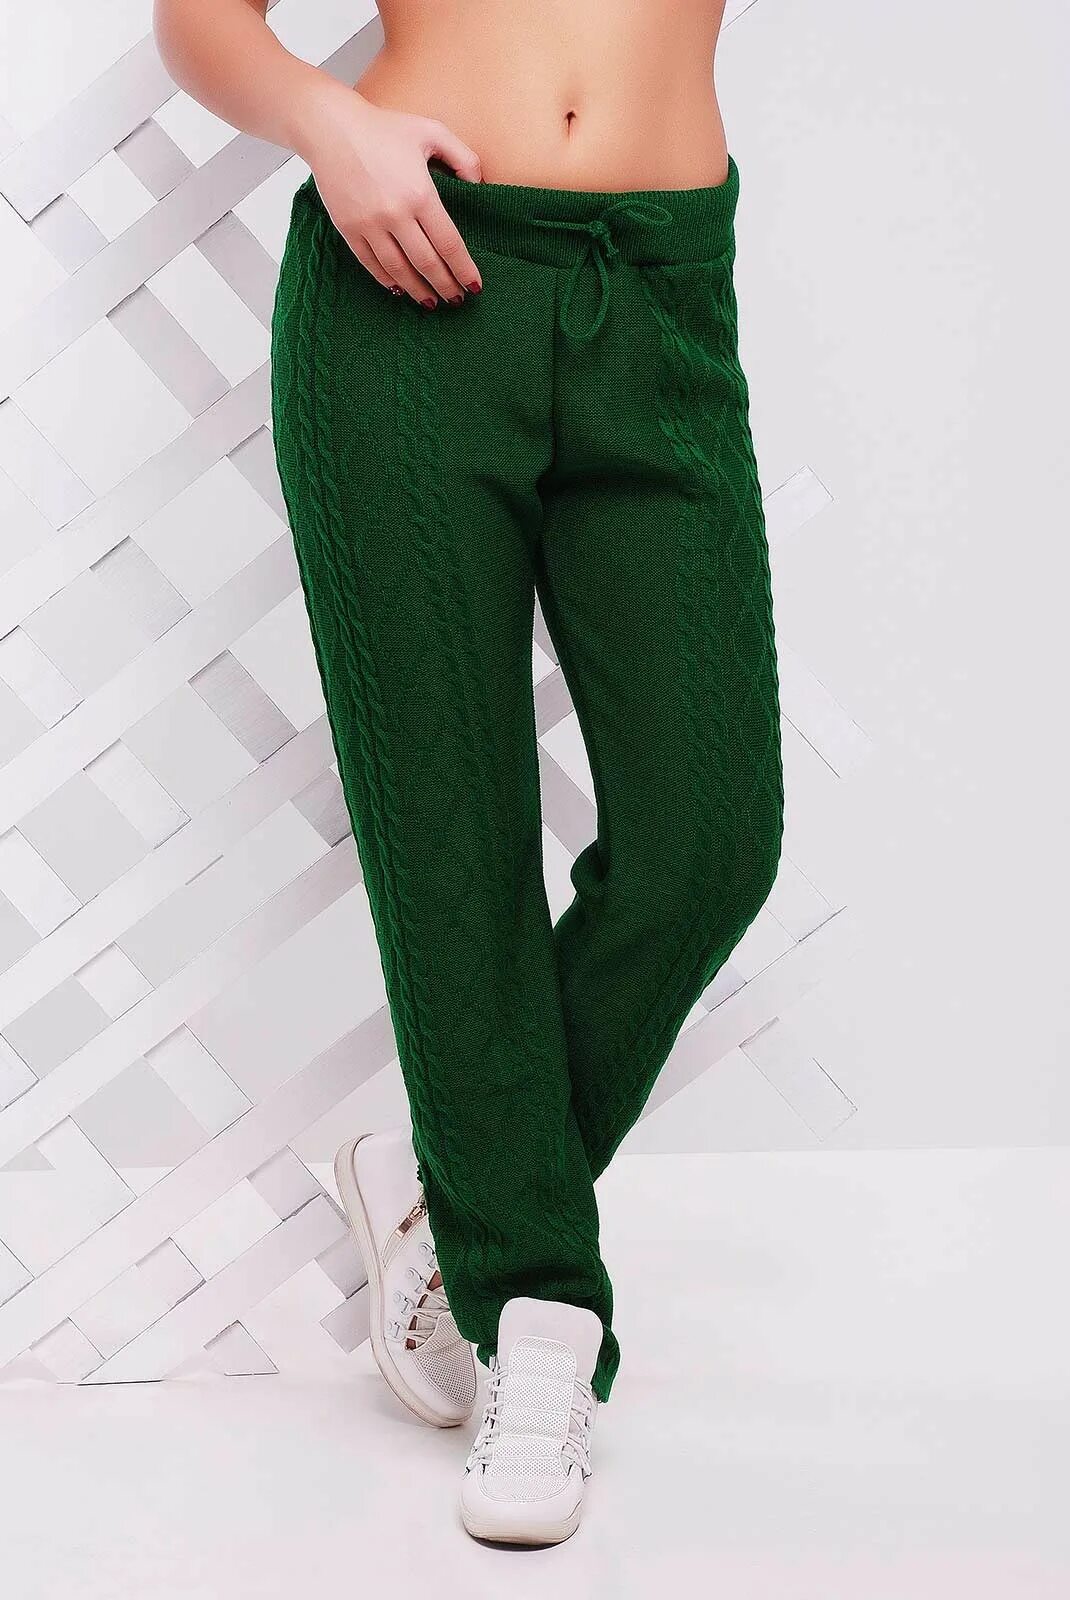 Купить зеленые штаны. Зелёные брюки женские. Зелёные штаны женские. Салатовые штаны женские. Зеленые трикотажные брюки.